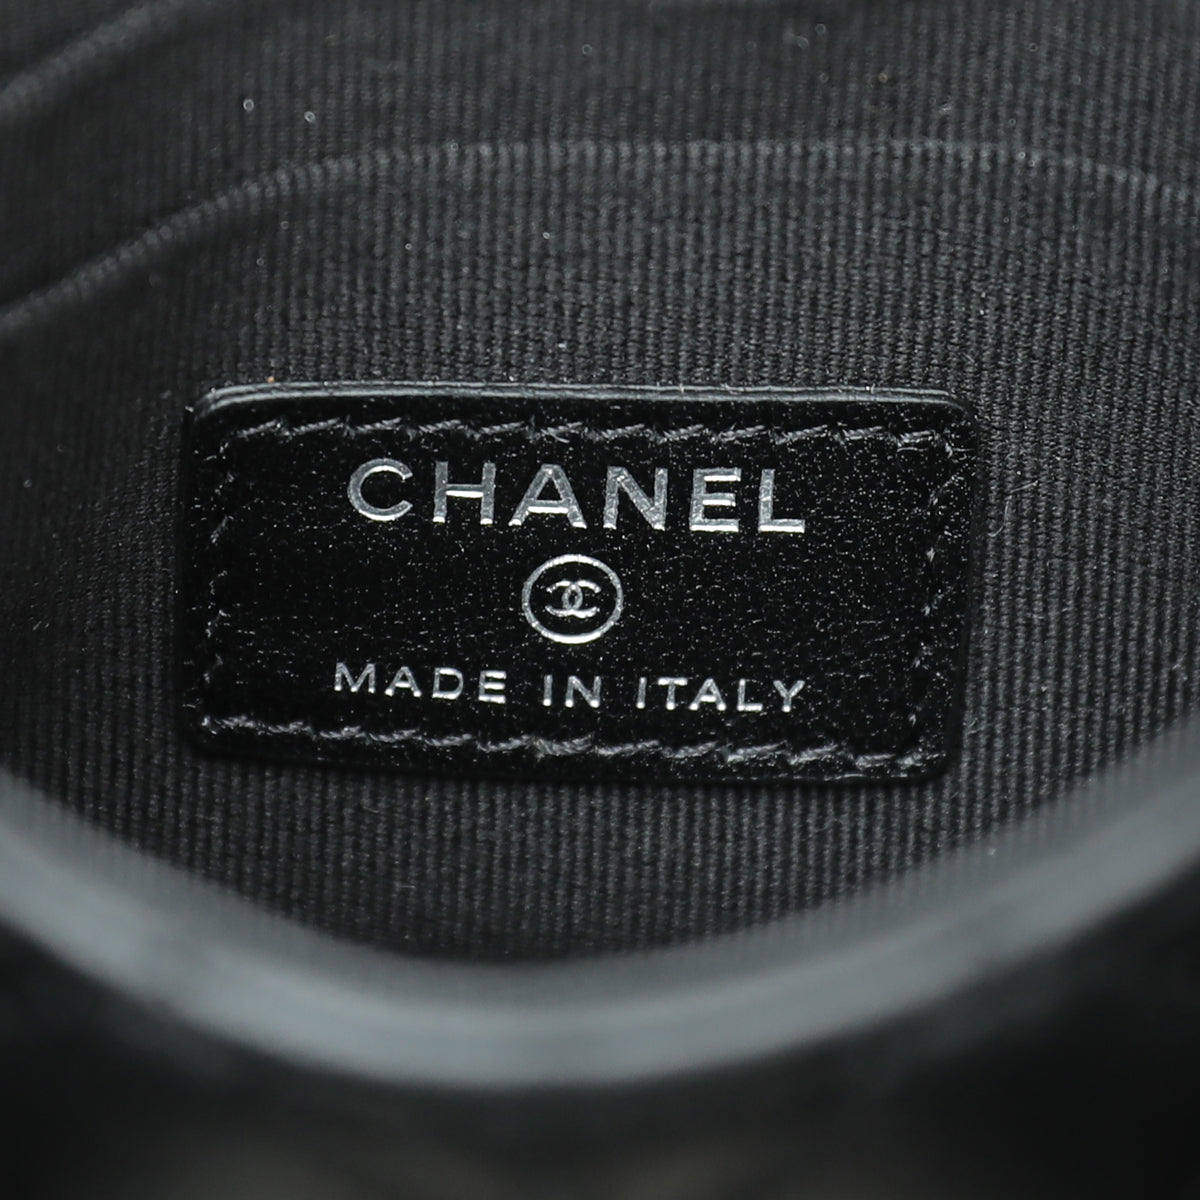 Chanel CC So Black Mini Trendy Mini Clutch With Chain